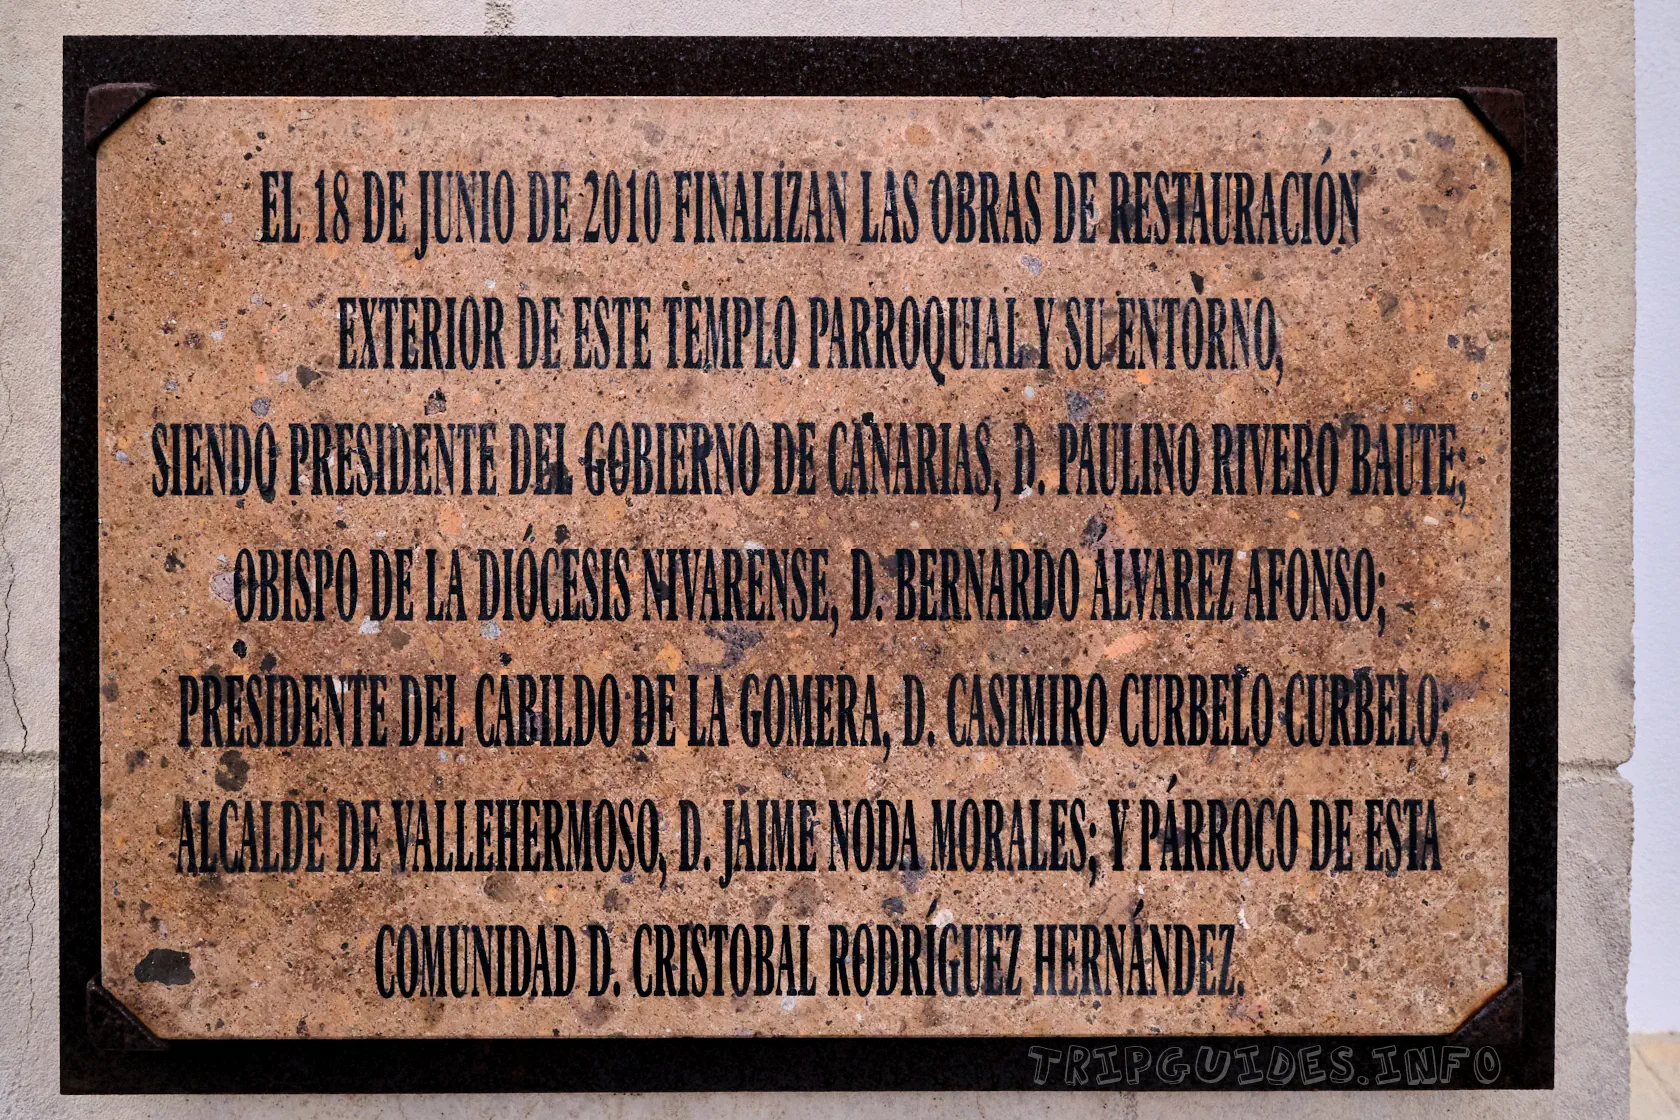 Информационная табличка церковь Parroquia de San Juan Bautista в Вальеэрмосо (Ла-Гомера)